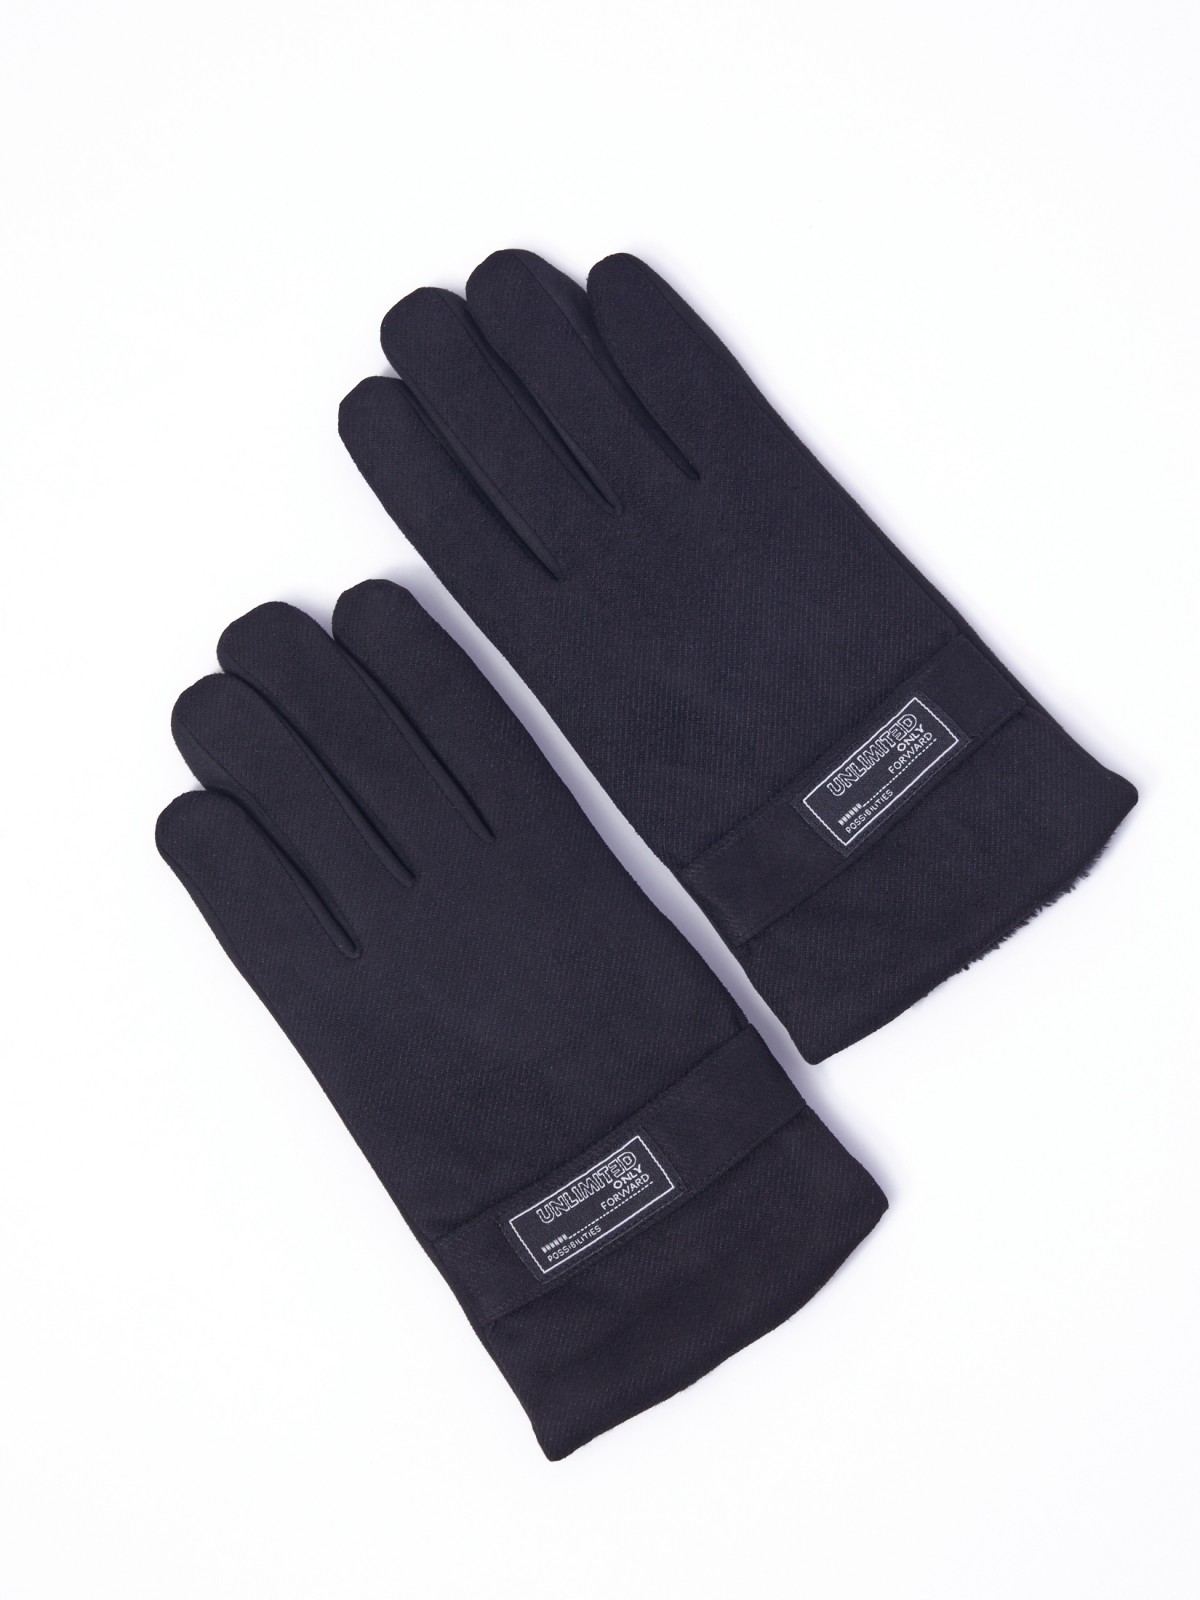 Тёплые тканевые перчатки с экомехом и функцией Touch Screen zolla 013339659025, цвет черный, размер XL